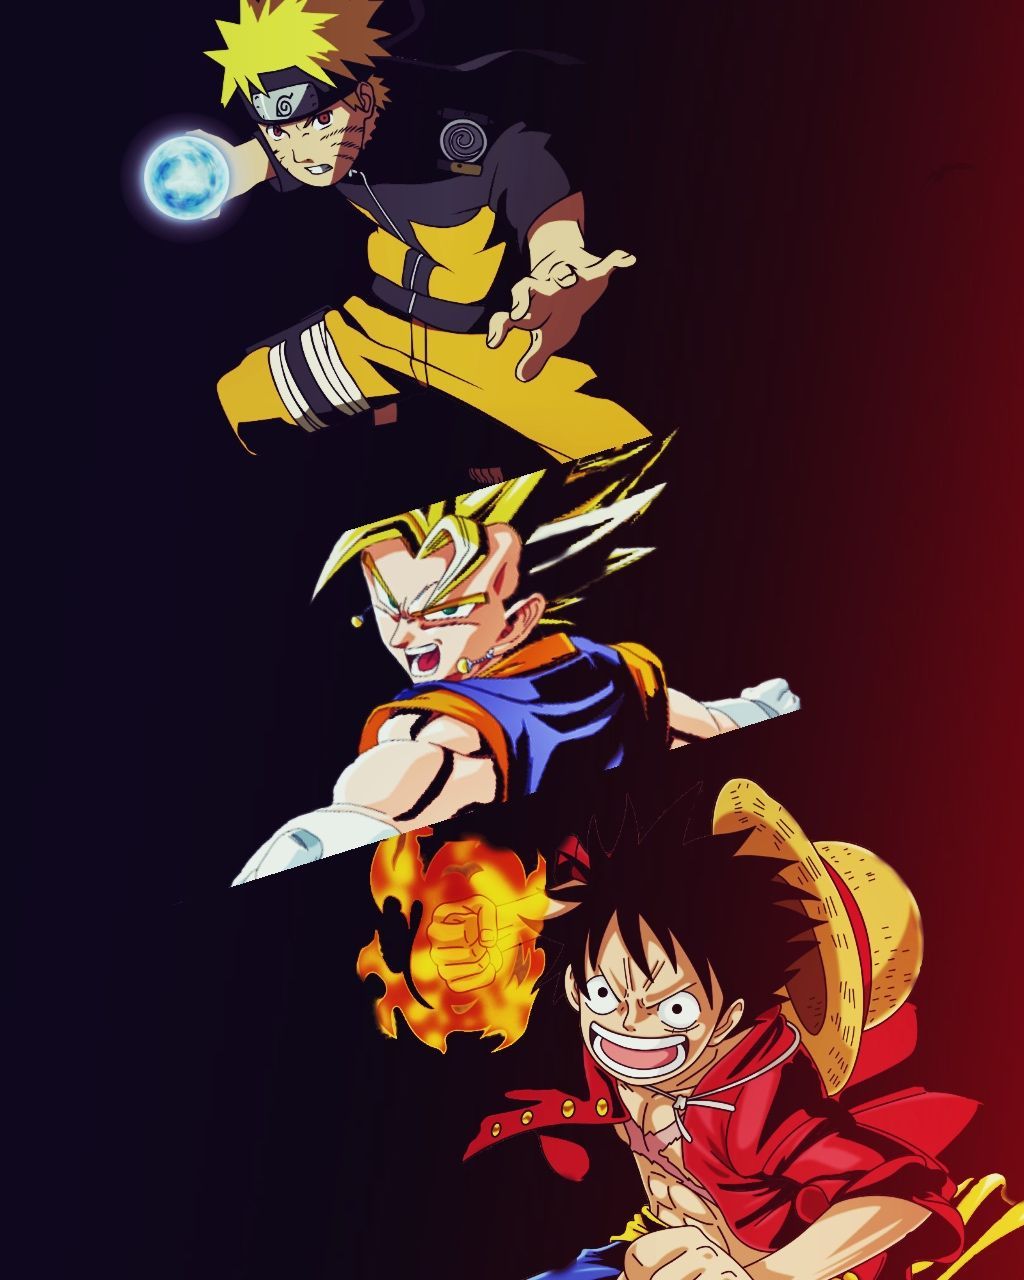 Wallpaper Naruto Luffy Goku Gudang Gambar